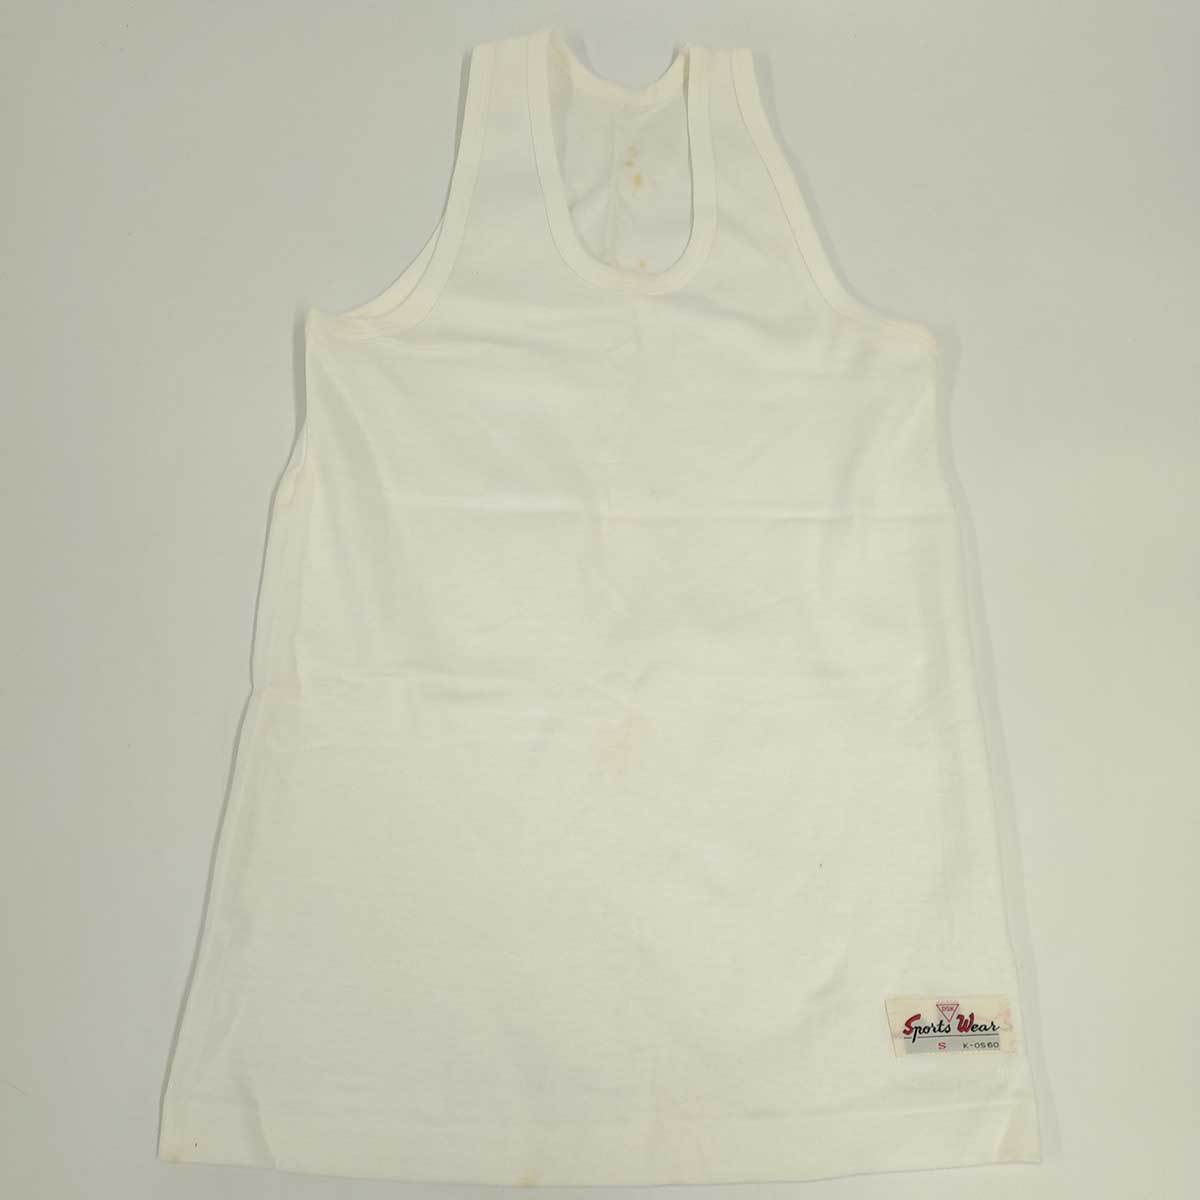 [ used ]DKS tank top running shirt S white unisex Vintage dead stock retro 